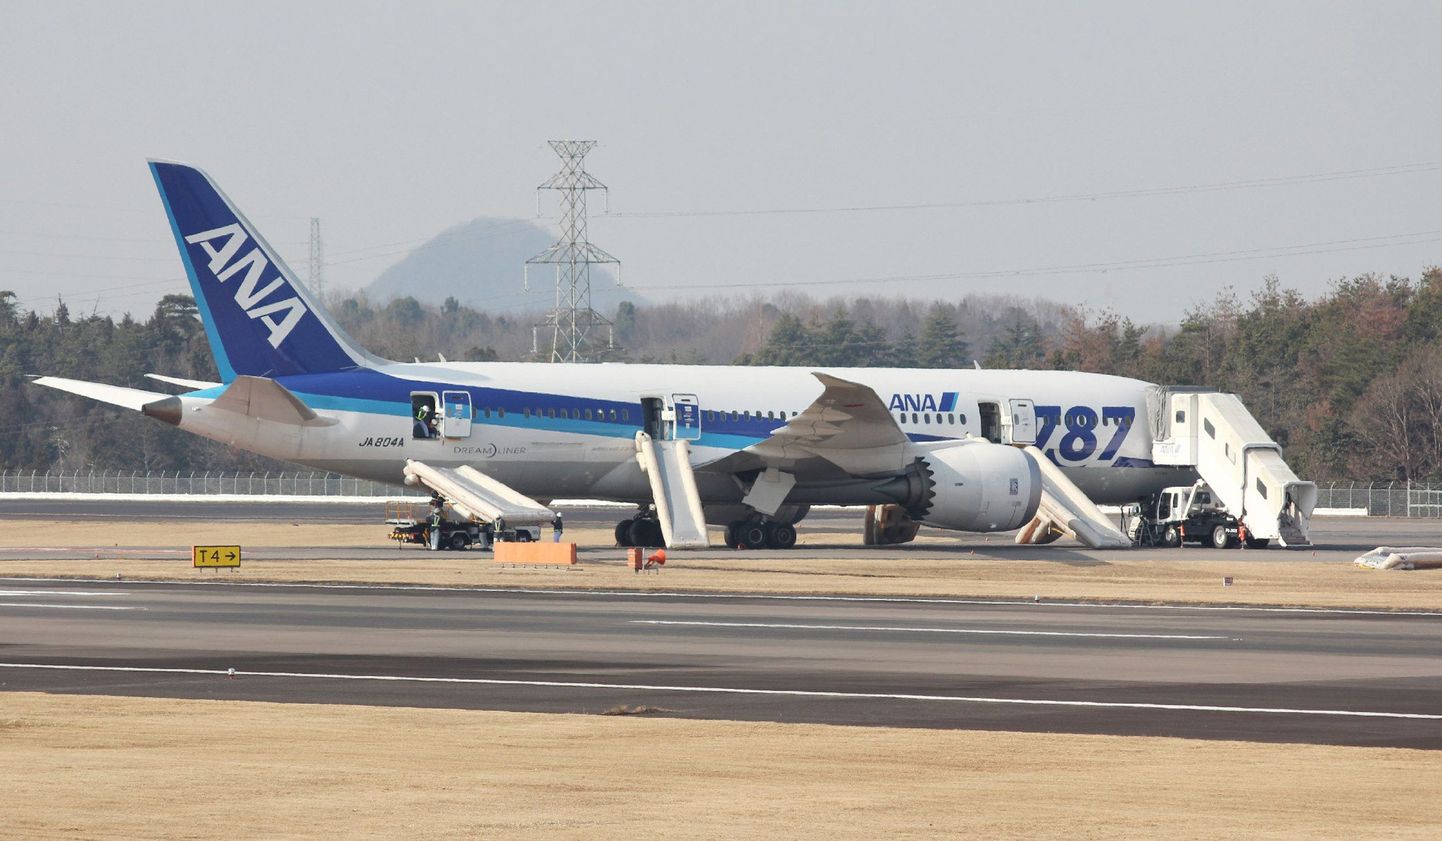 Jaapanis Takamatsu lennuväljal tegi hädamaandumise Boeing 787 Dreamliner, mis kuulub firmale All Nippon Airways (ANA).